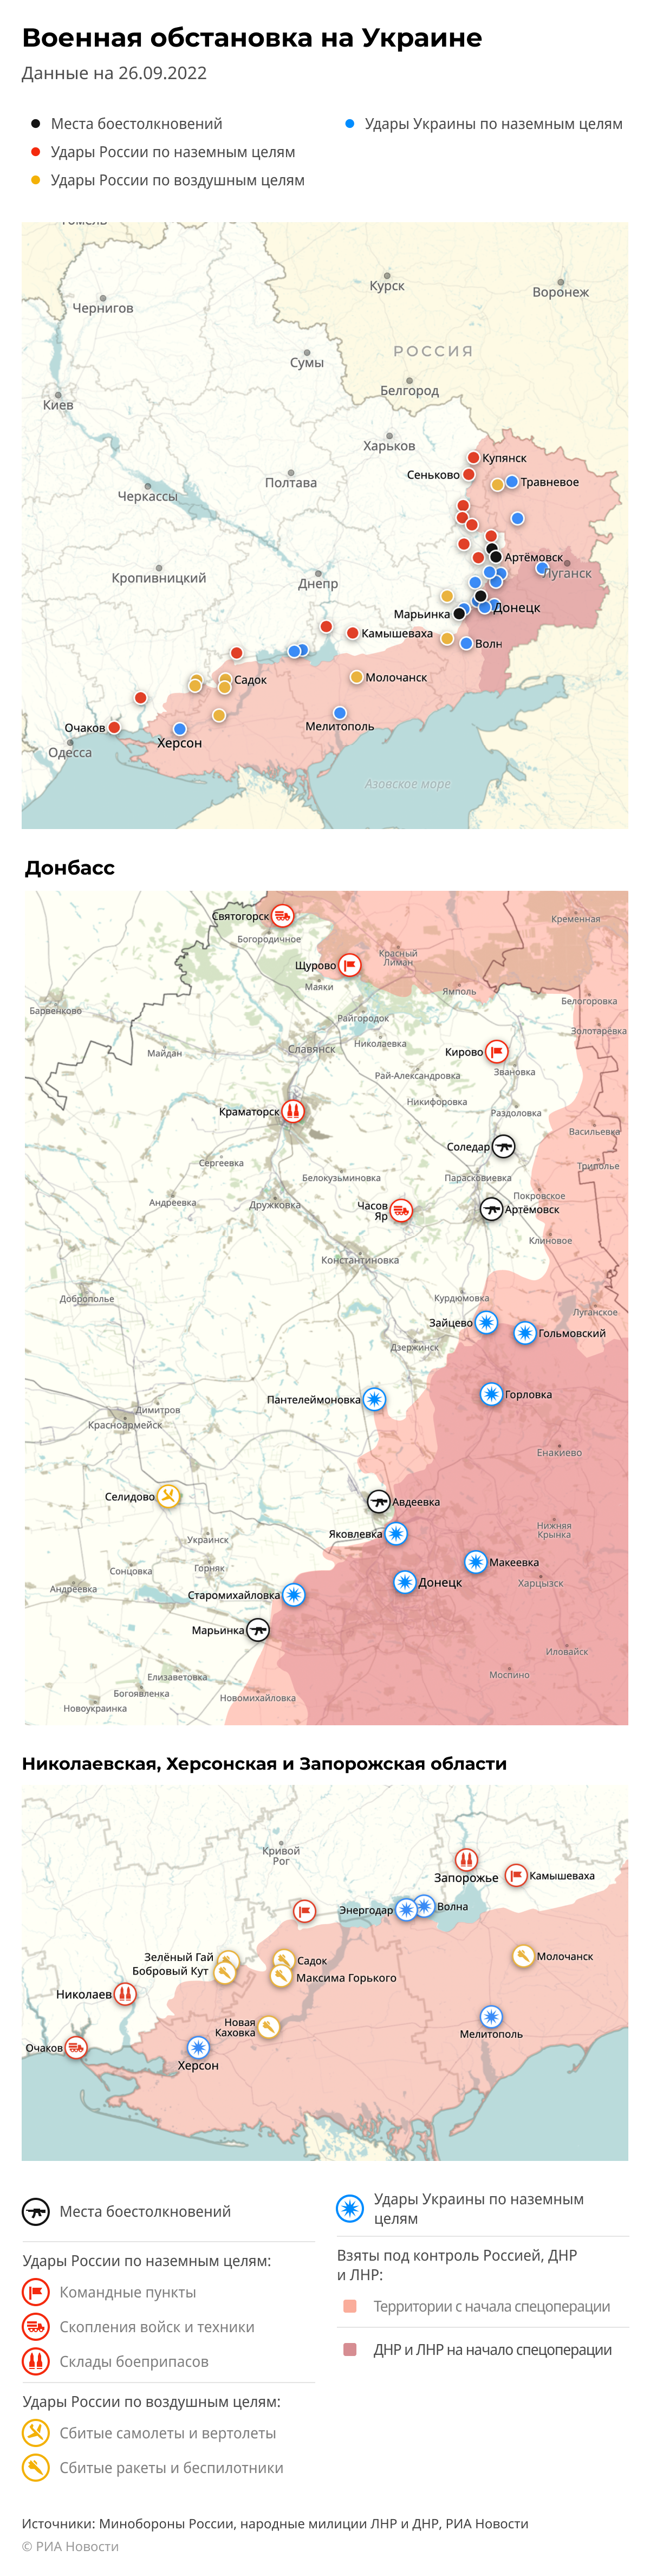 Карта спецоперации Вооруженных сил России на Украине на 26.09.2022